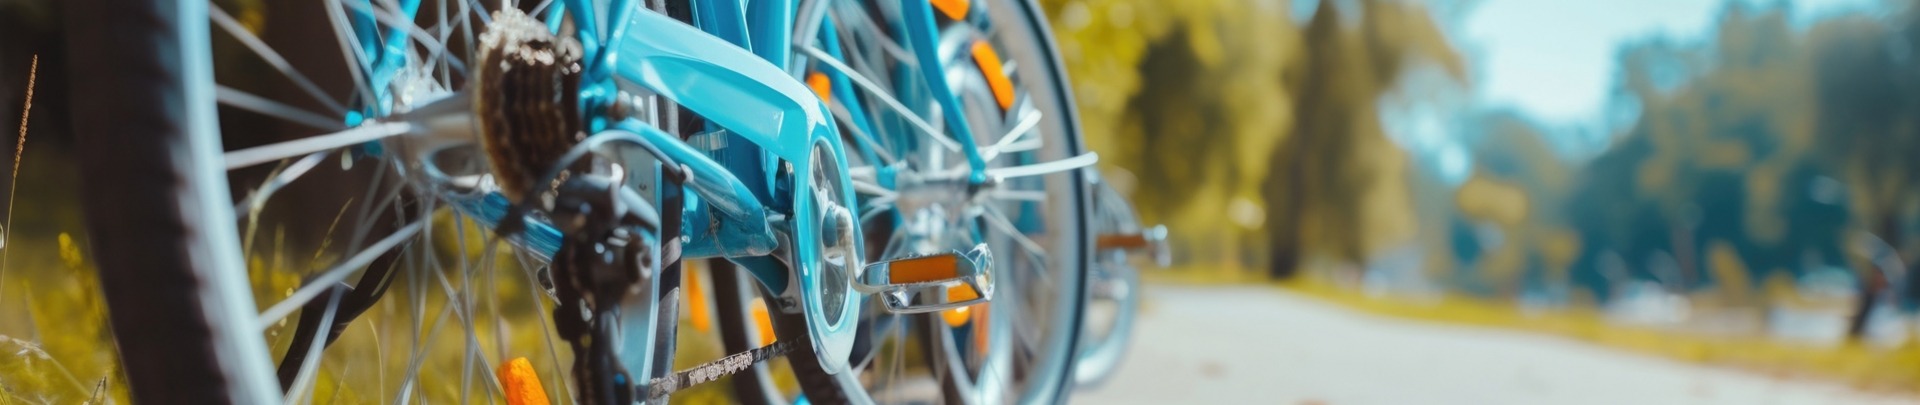 Een close-up van een blauwe fiets geparkeerd aan de kant van een weg.